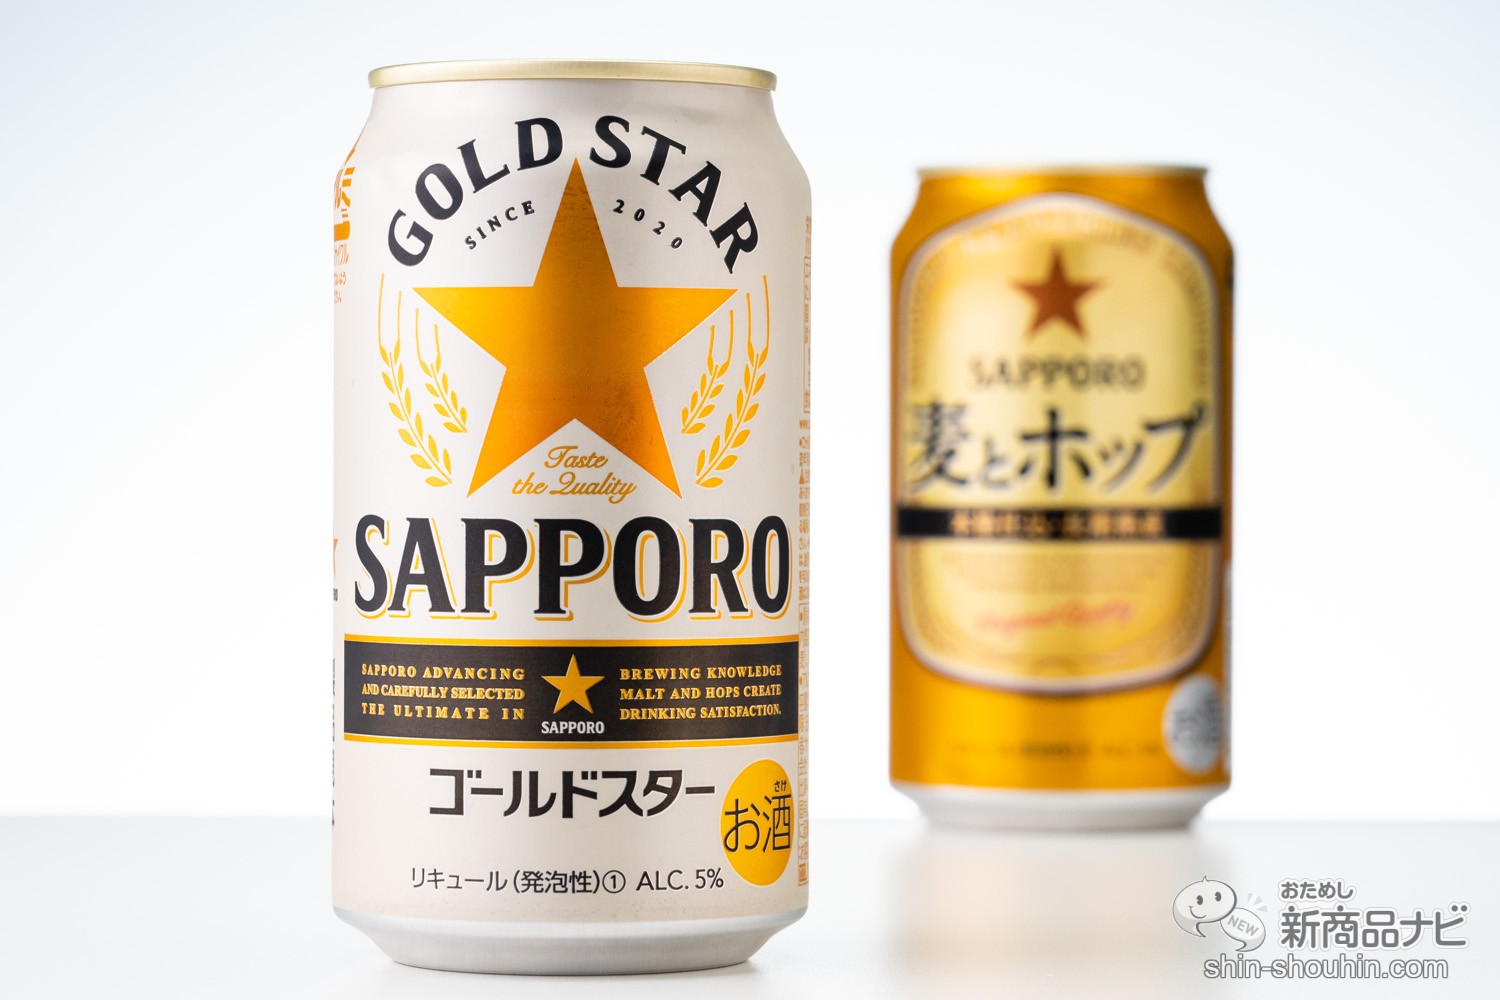 おためし新商品ナビ » Blog Archive » 新ジャンル『サッポロ GOLD STAR（ゴールドスター）』と、『サッポロ  麦とホップ』の違いを【飲み比べ】